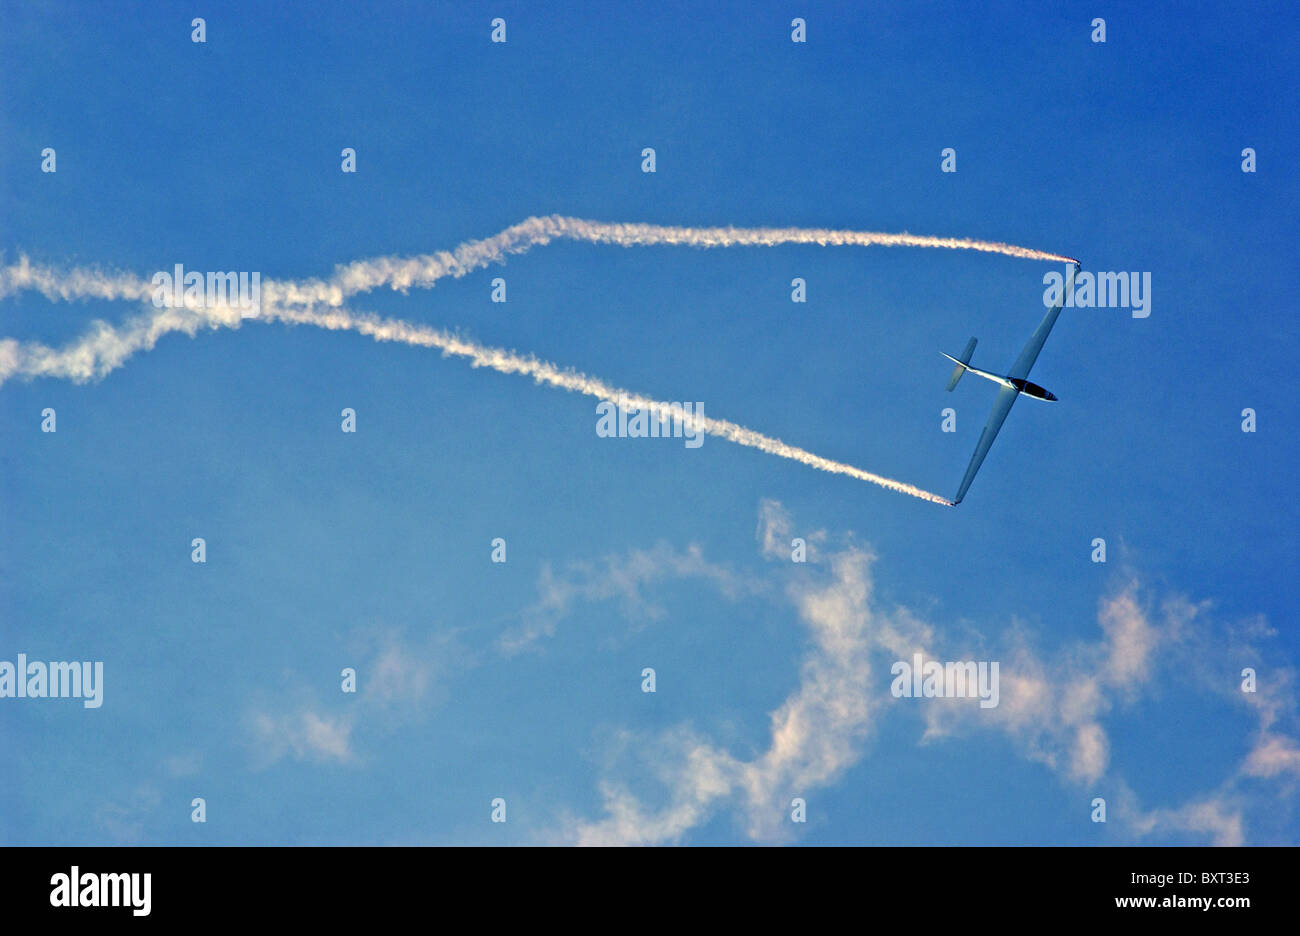 Shoreham air show - a glider stunt plane trails smoke. Stock Photo